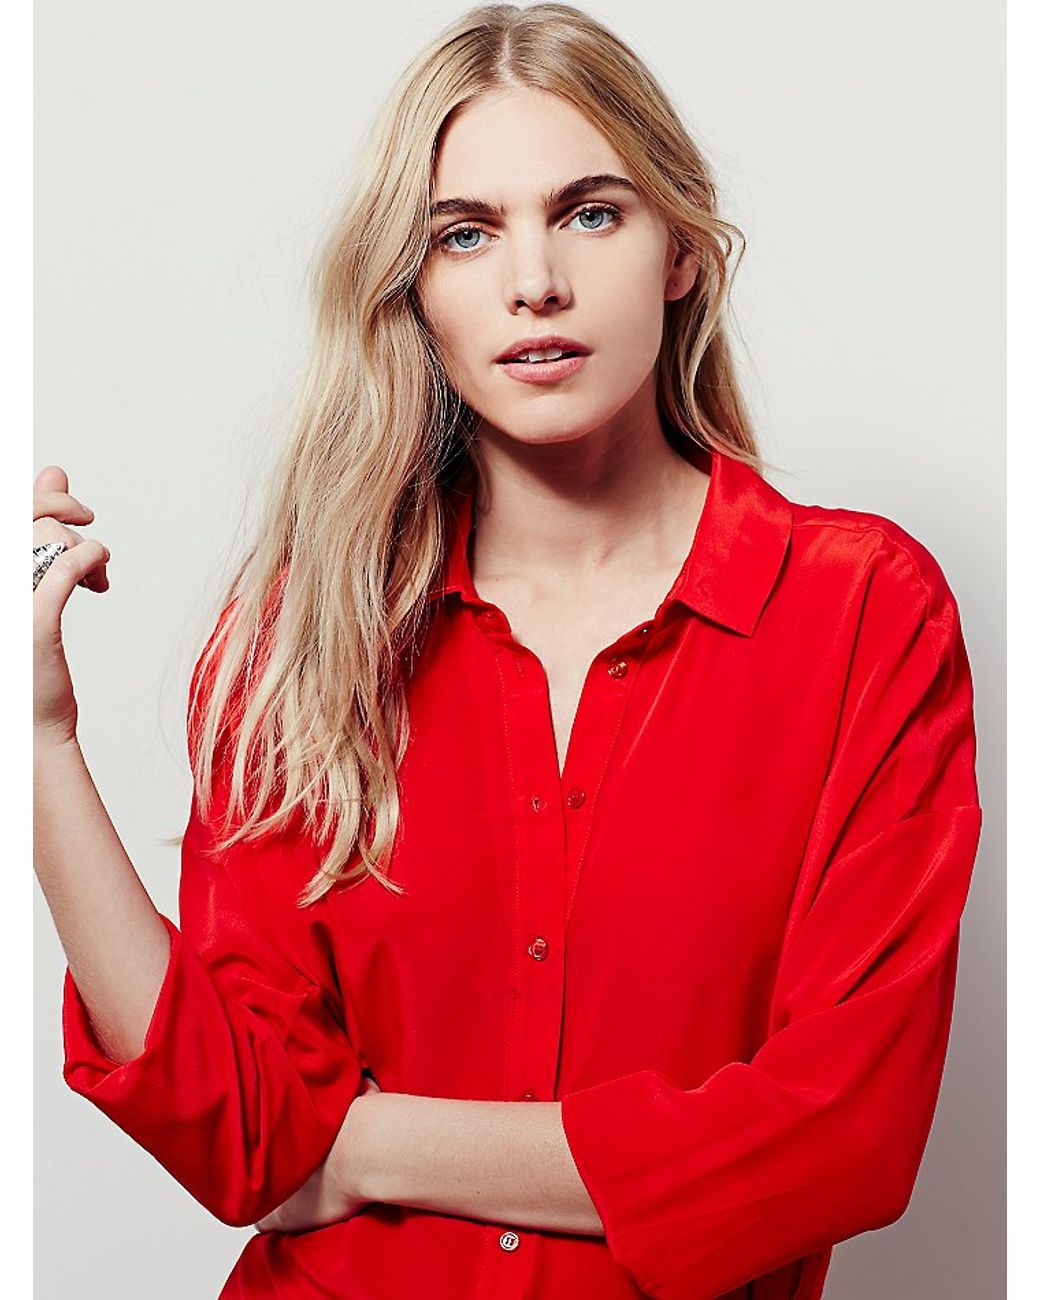 red shirt dress